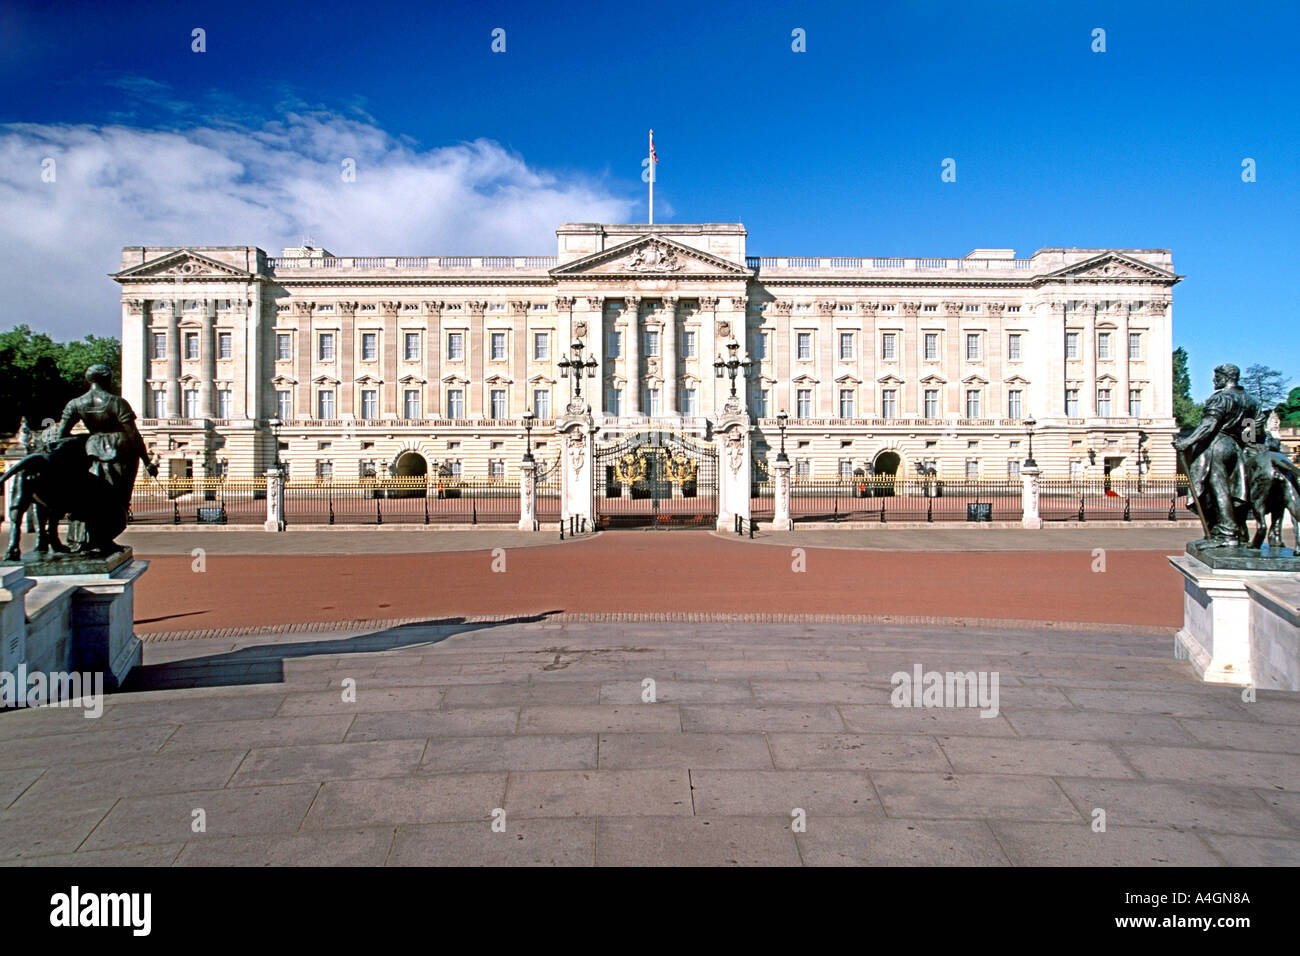 Le palais de Buckingham, l'une des demeures de la famille royale britannique à Londres. Banque D'Images